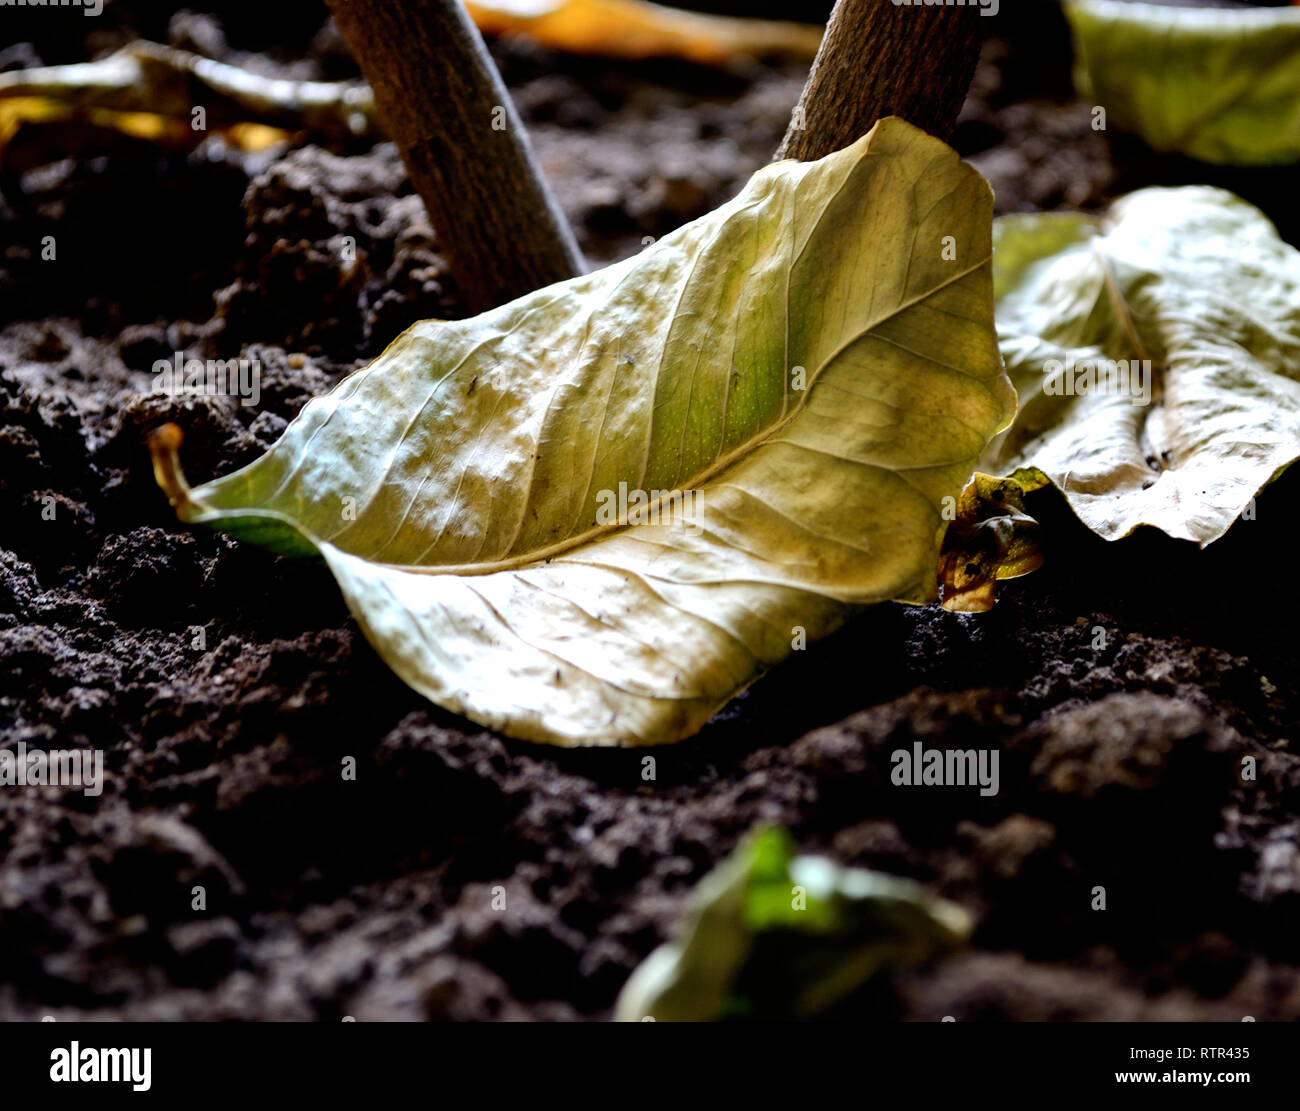 Dry green lemon leaf on wet soil Stock Photo